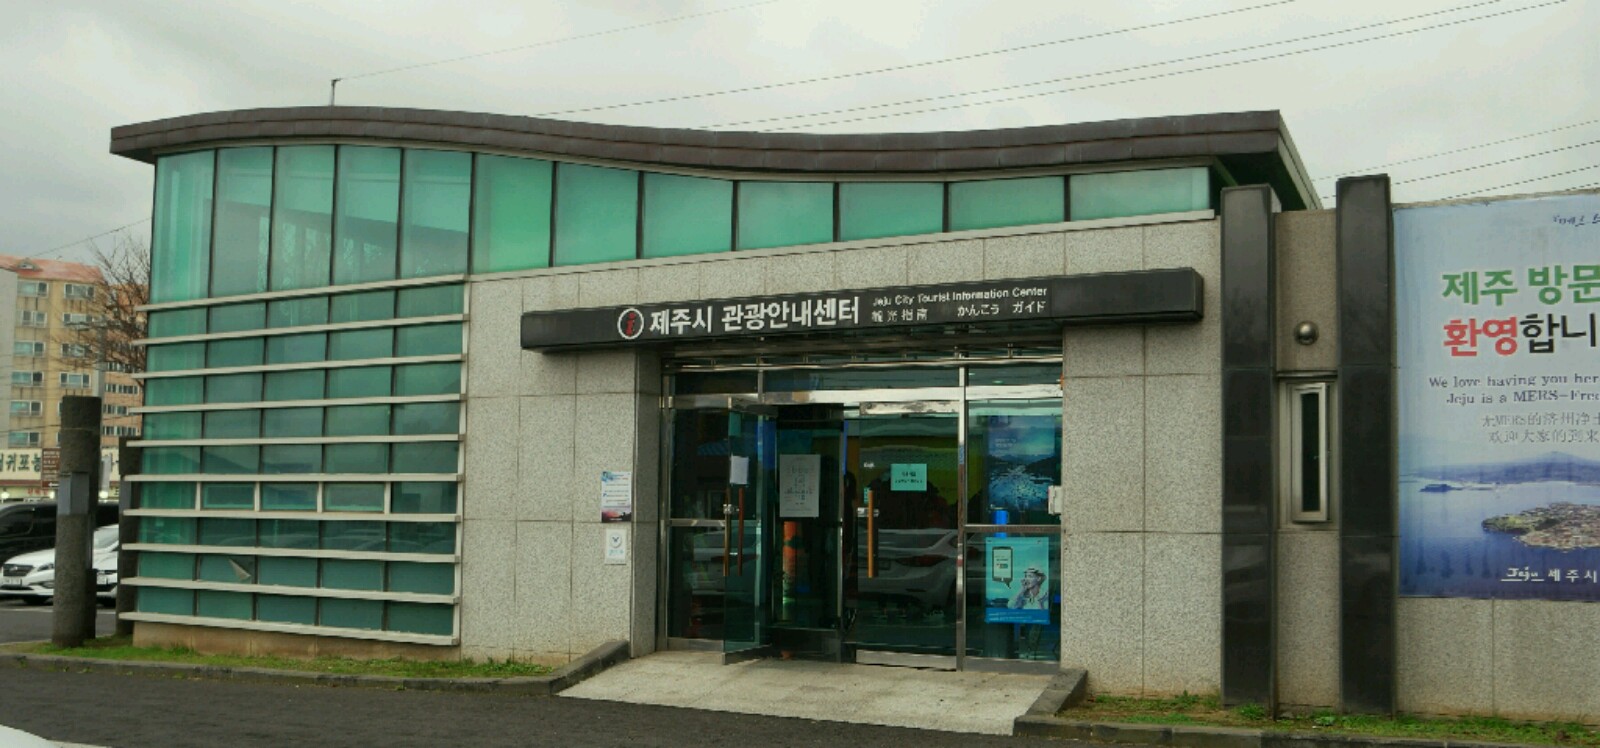 용두암인증센터